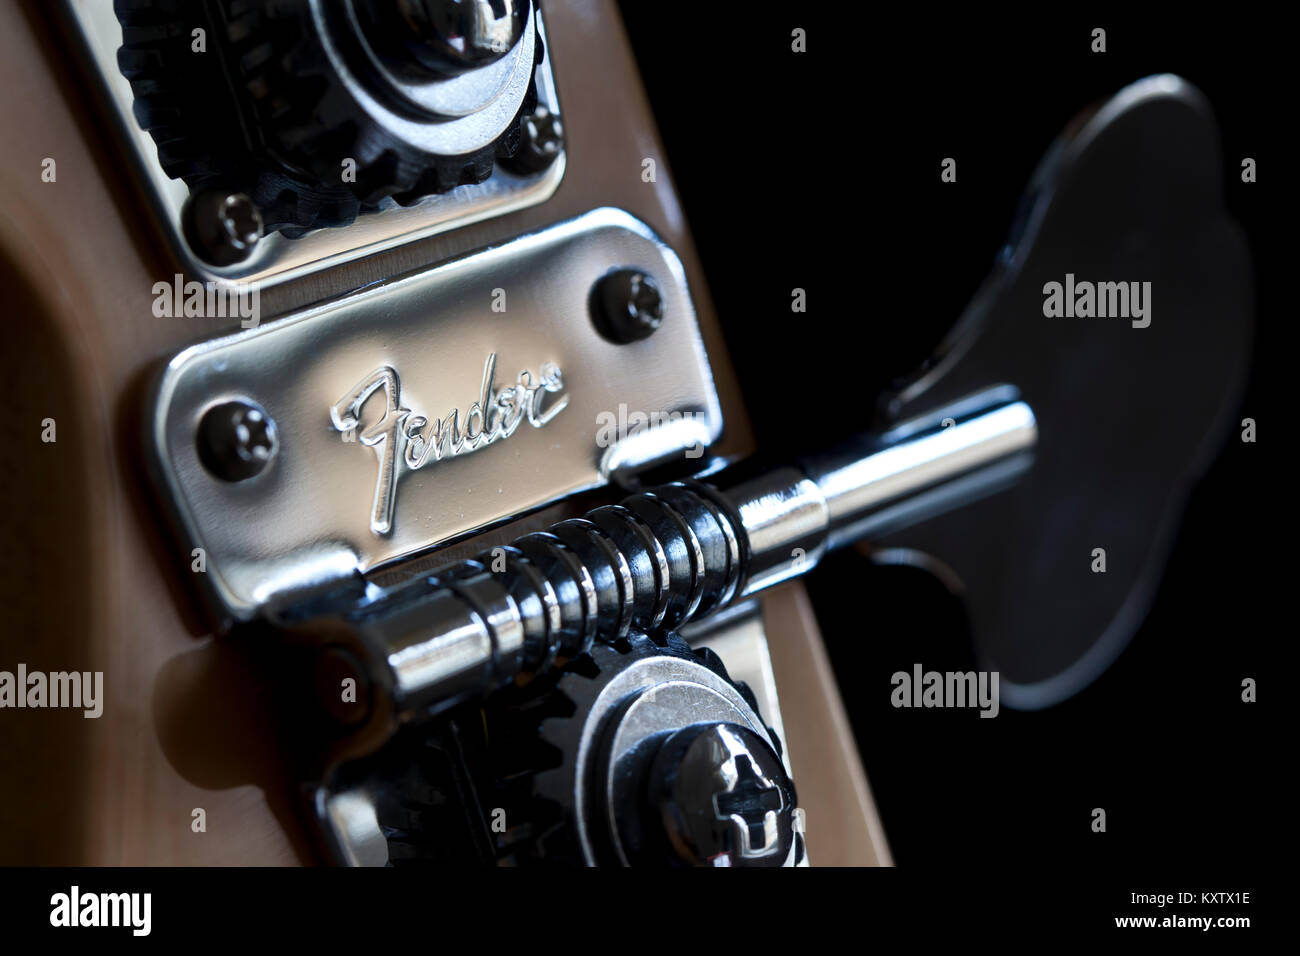 Bath, Regno Unito - 13 Maggio 2011: Fender marca inseguito in un metallo pirolo su un Jazz bass chitarra con uno sfondo nero. Macro Close-up Foto Stock